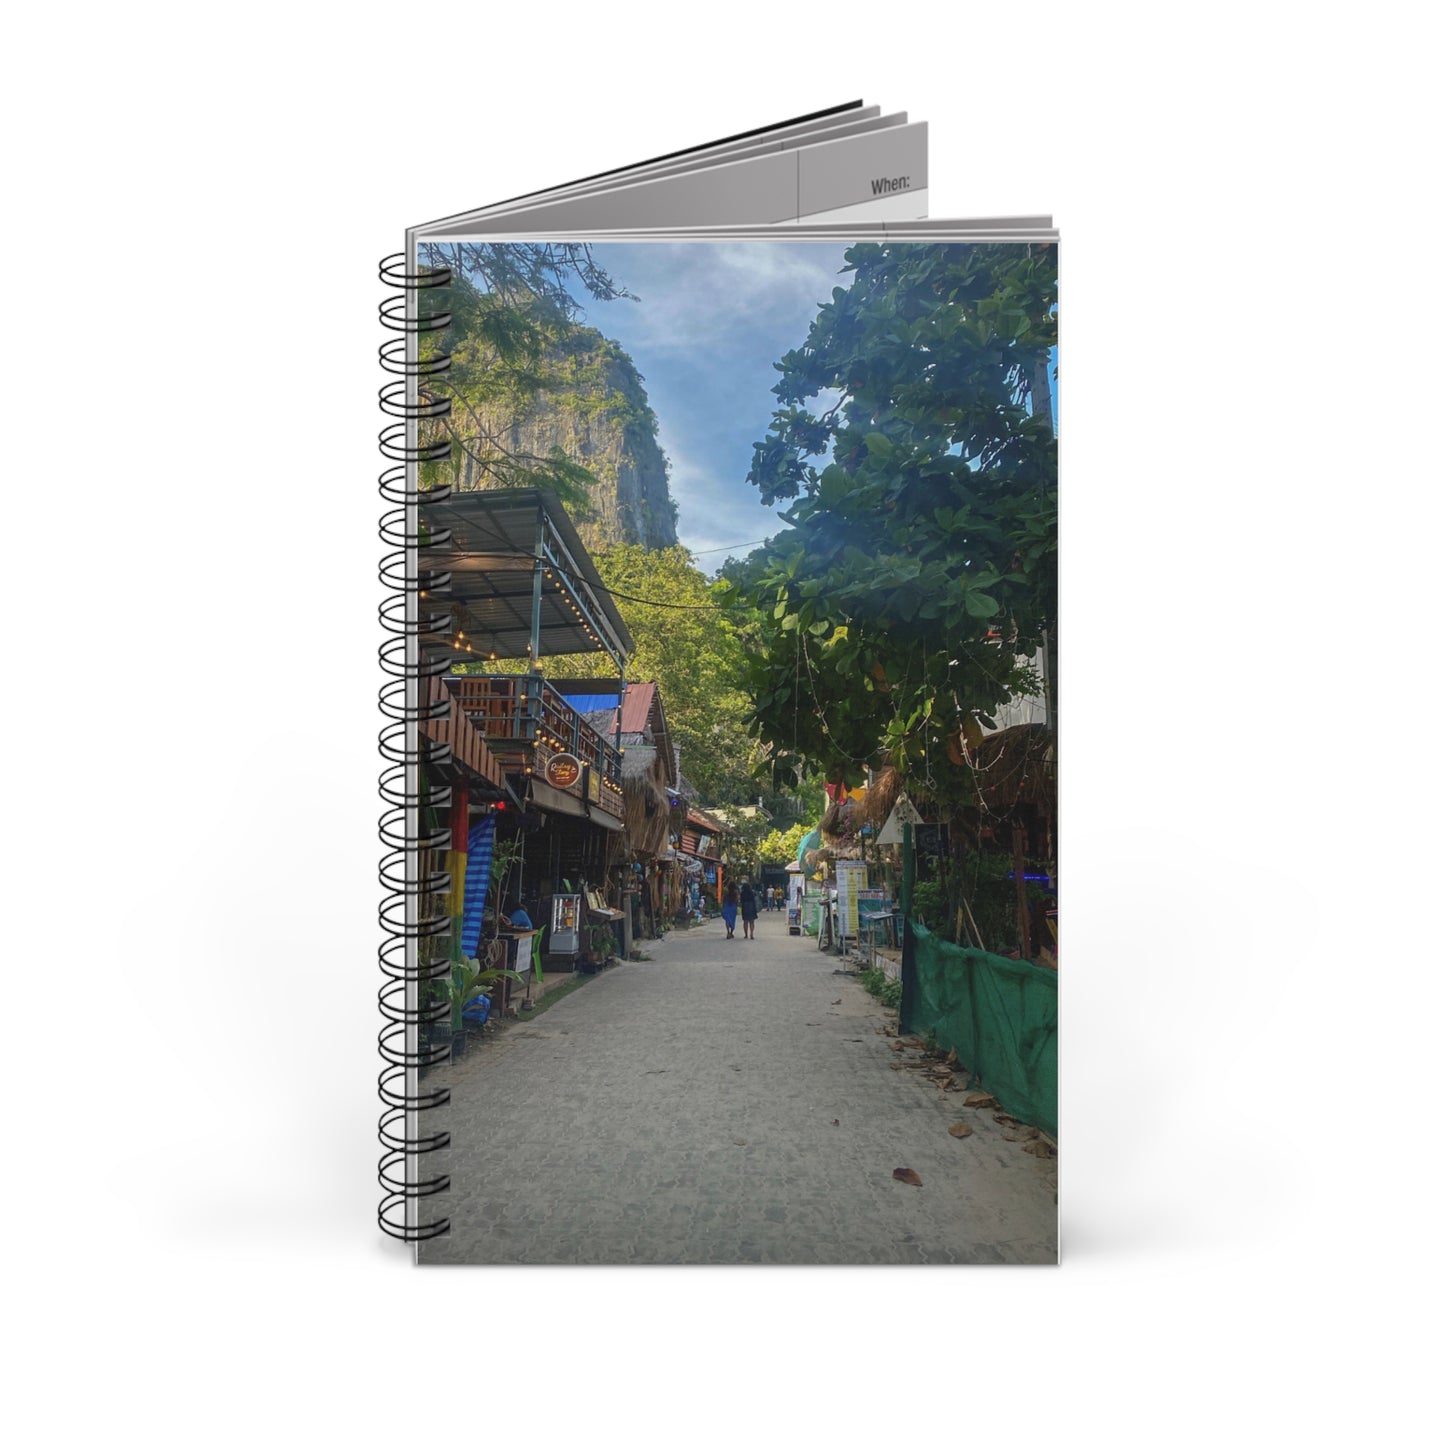 Thailand Island Village - Spiral Journal (EU)